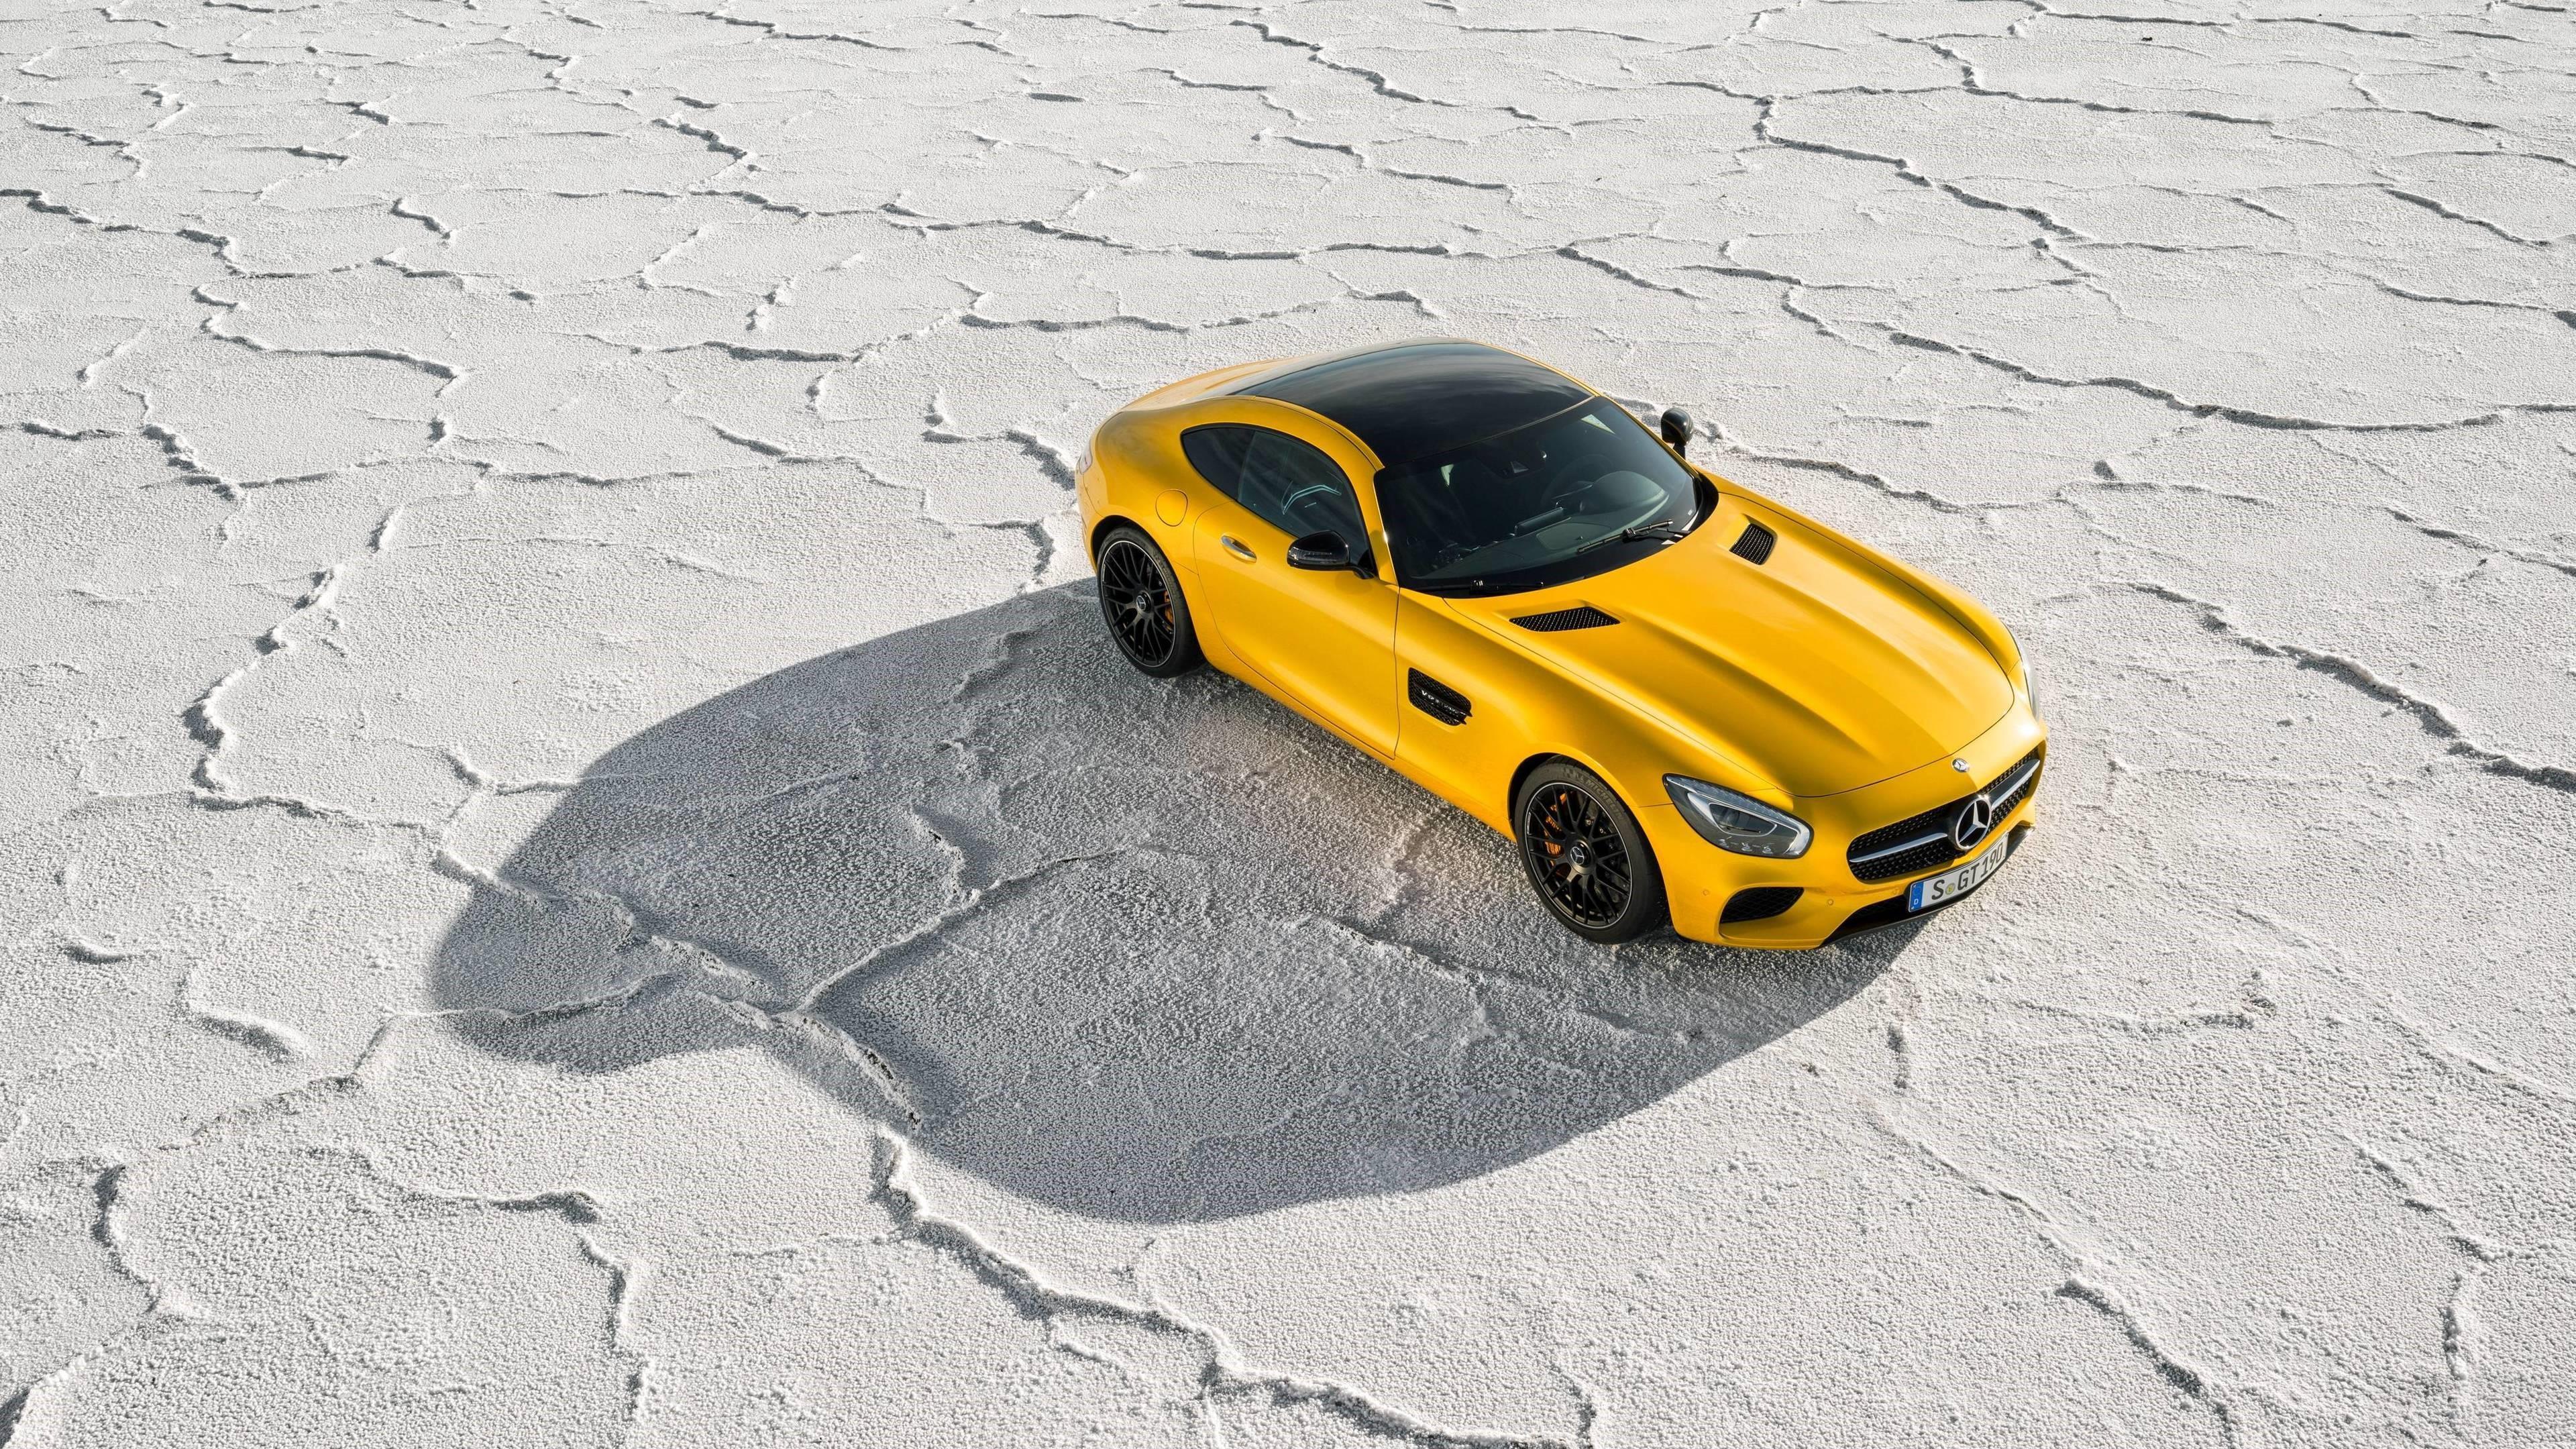 HD wallpaper, 2018 Yellow Mercedes Benz Amg Gt 4K